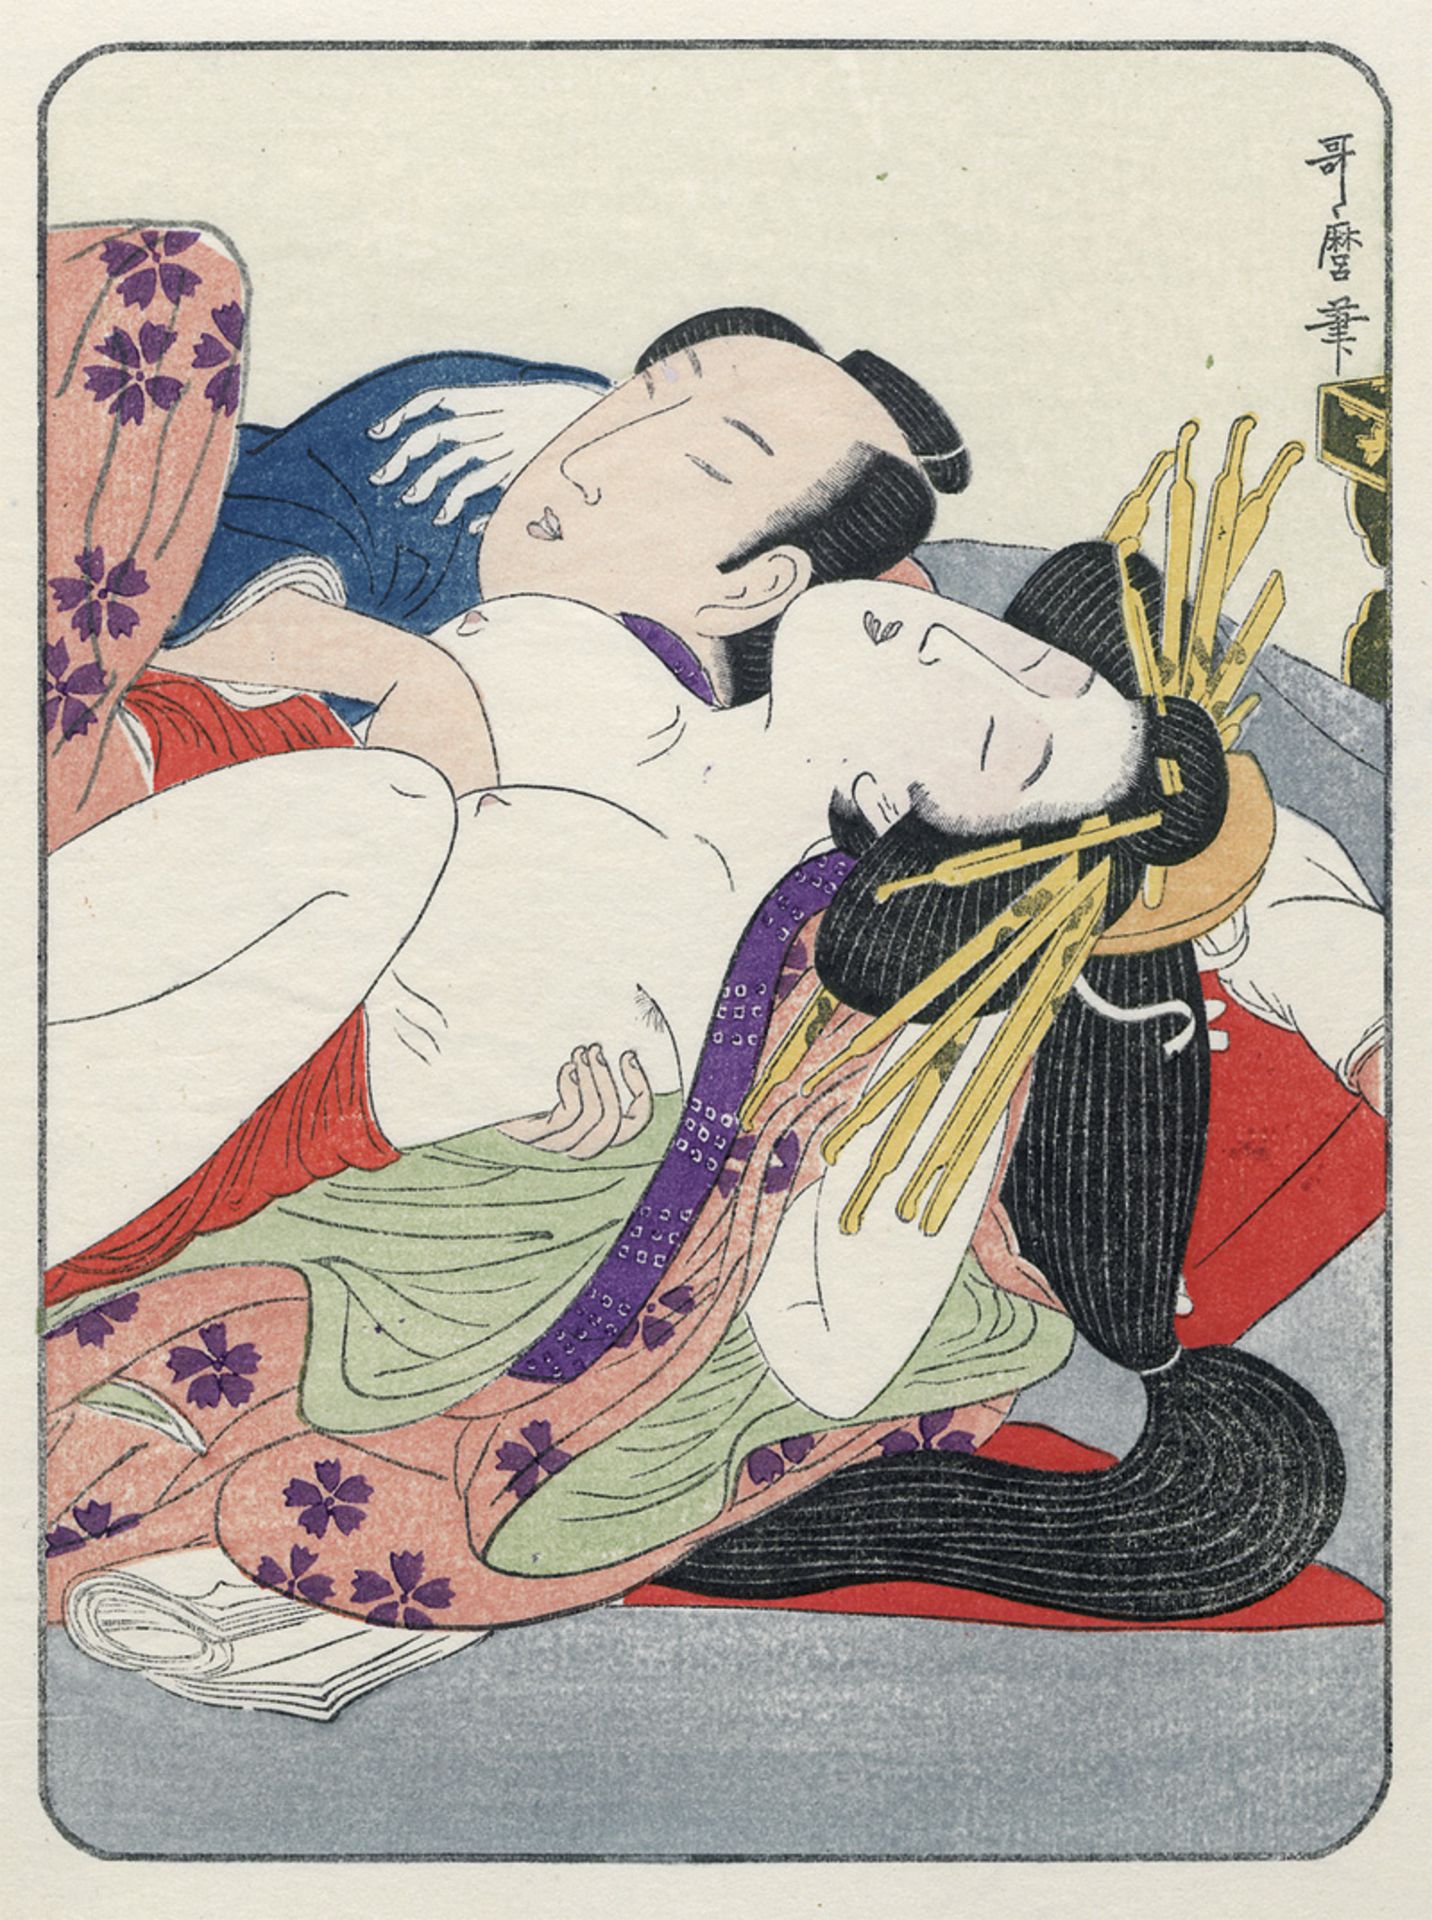 Ukiyoe hyōjō-bi: Bilder der Schönheit der Frauen im Ukiyo-e-Holzschnitt